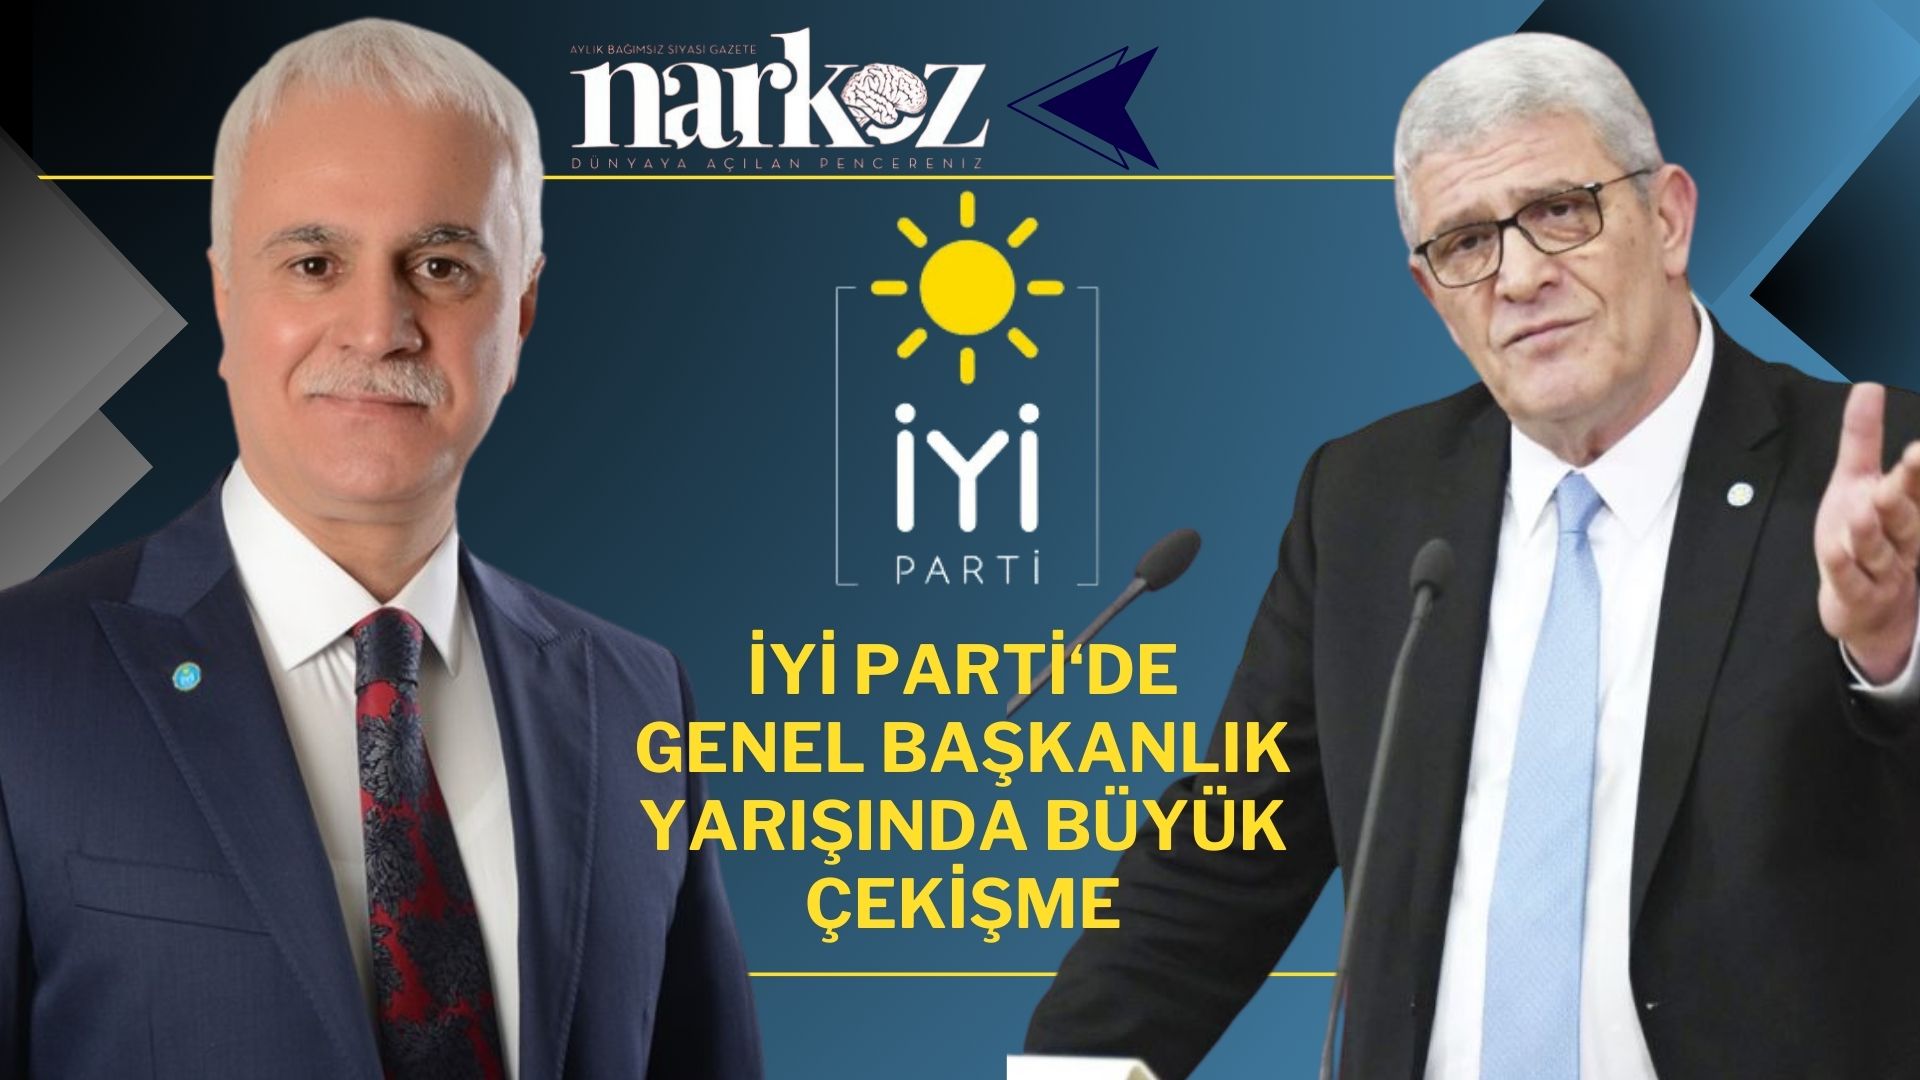 İYİ Parti'nin Genel Başkanı Koray Aydın'mı yoksa Müsavat Dervişoğlu'mu olacak?